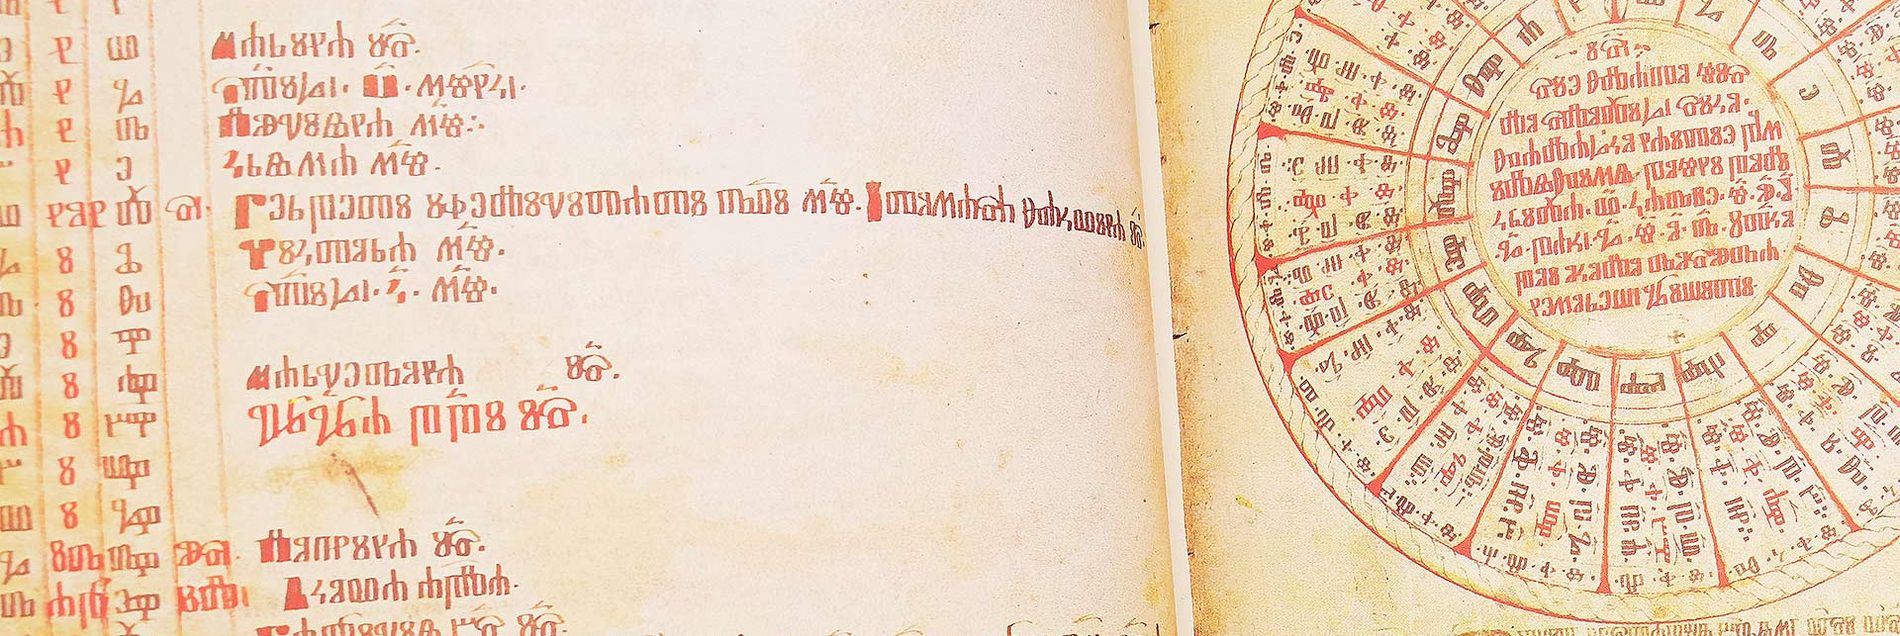 <i>“Eine einmalige kirchenslawische Textsammlung aus 5 Jahrhunderten”</i>